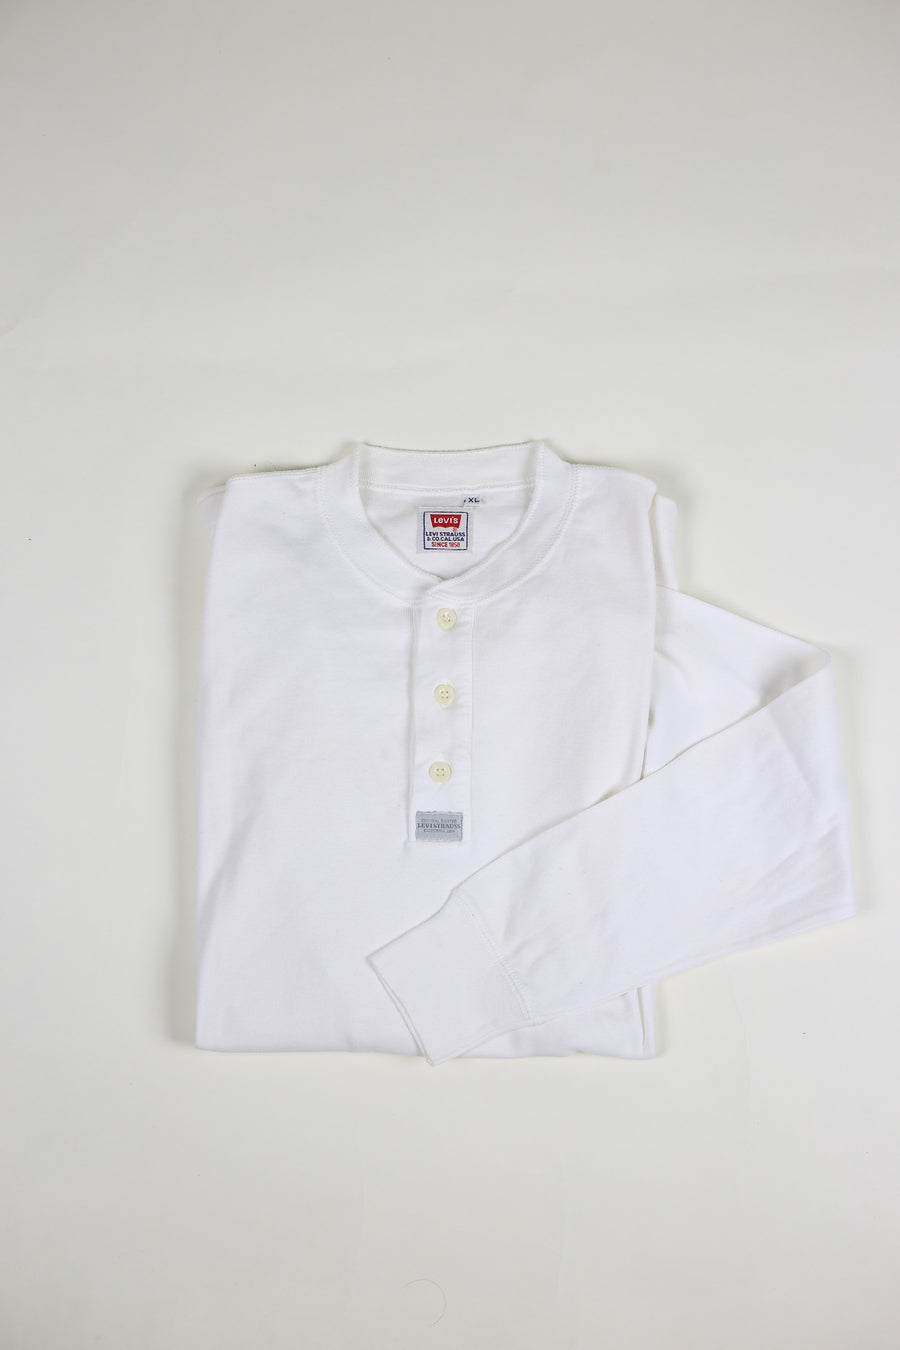 Henley shirt -XL-